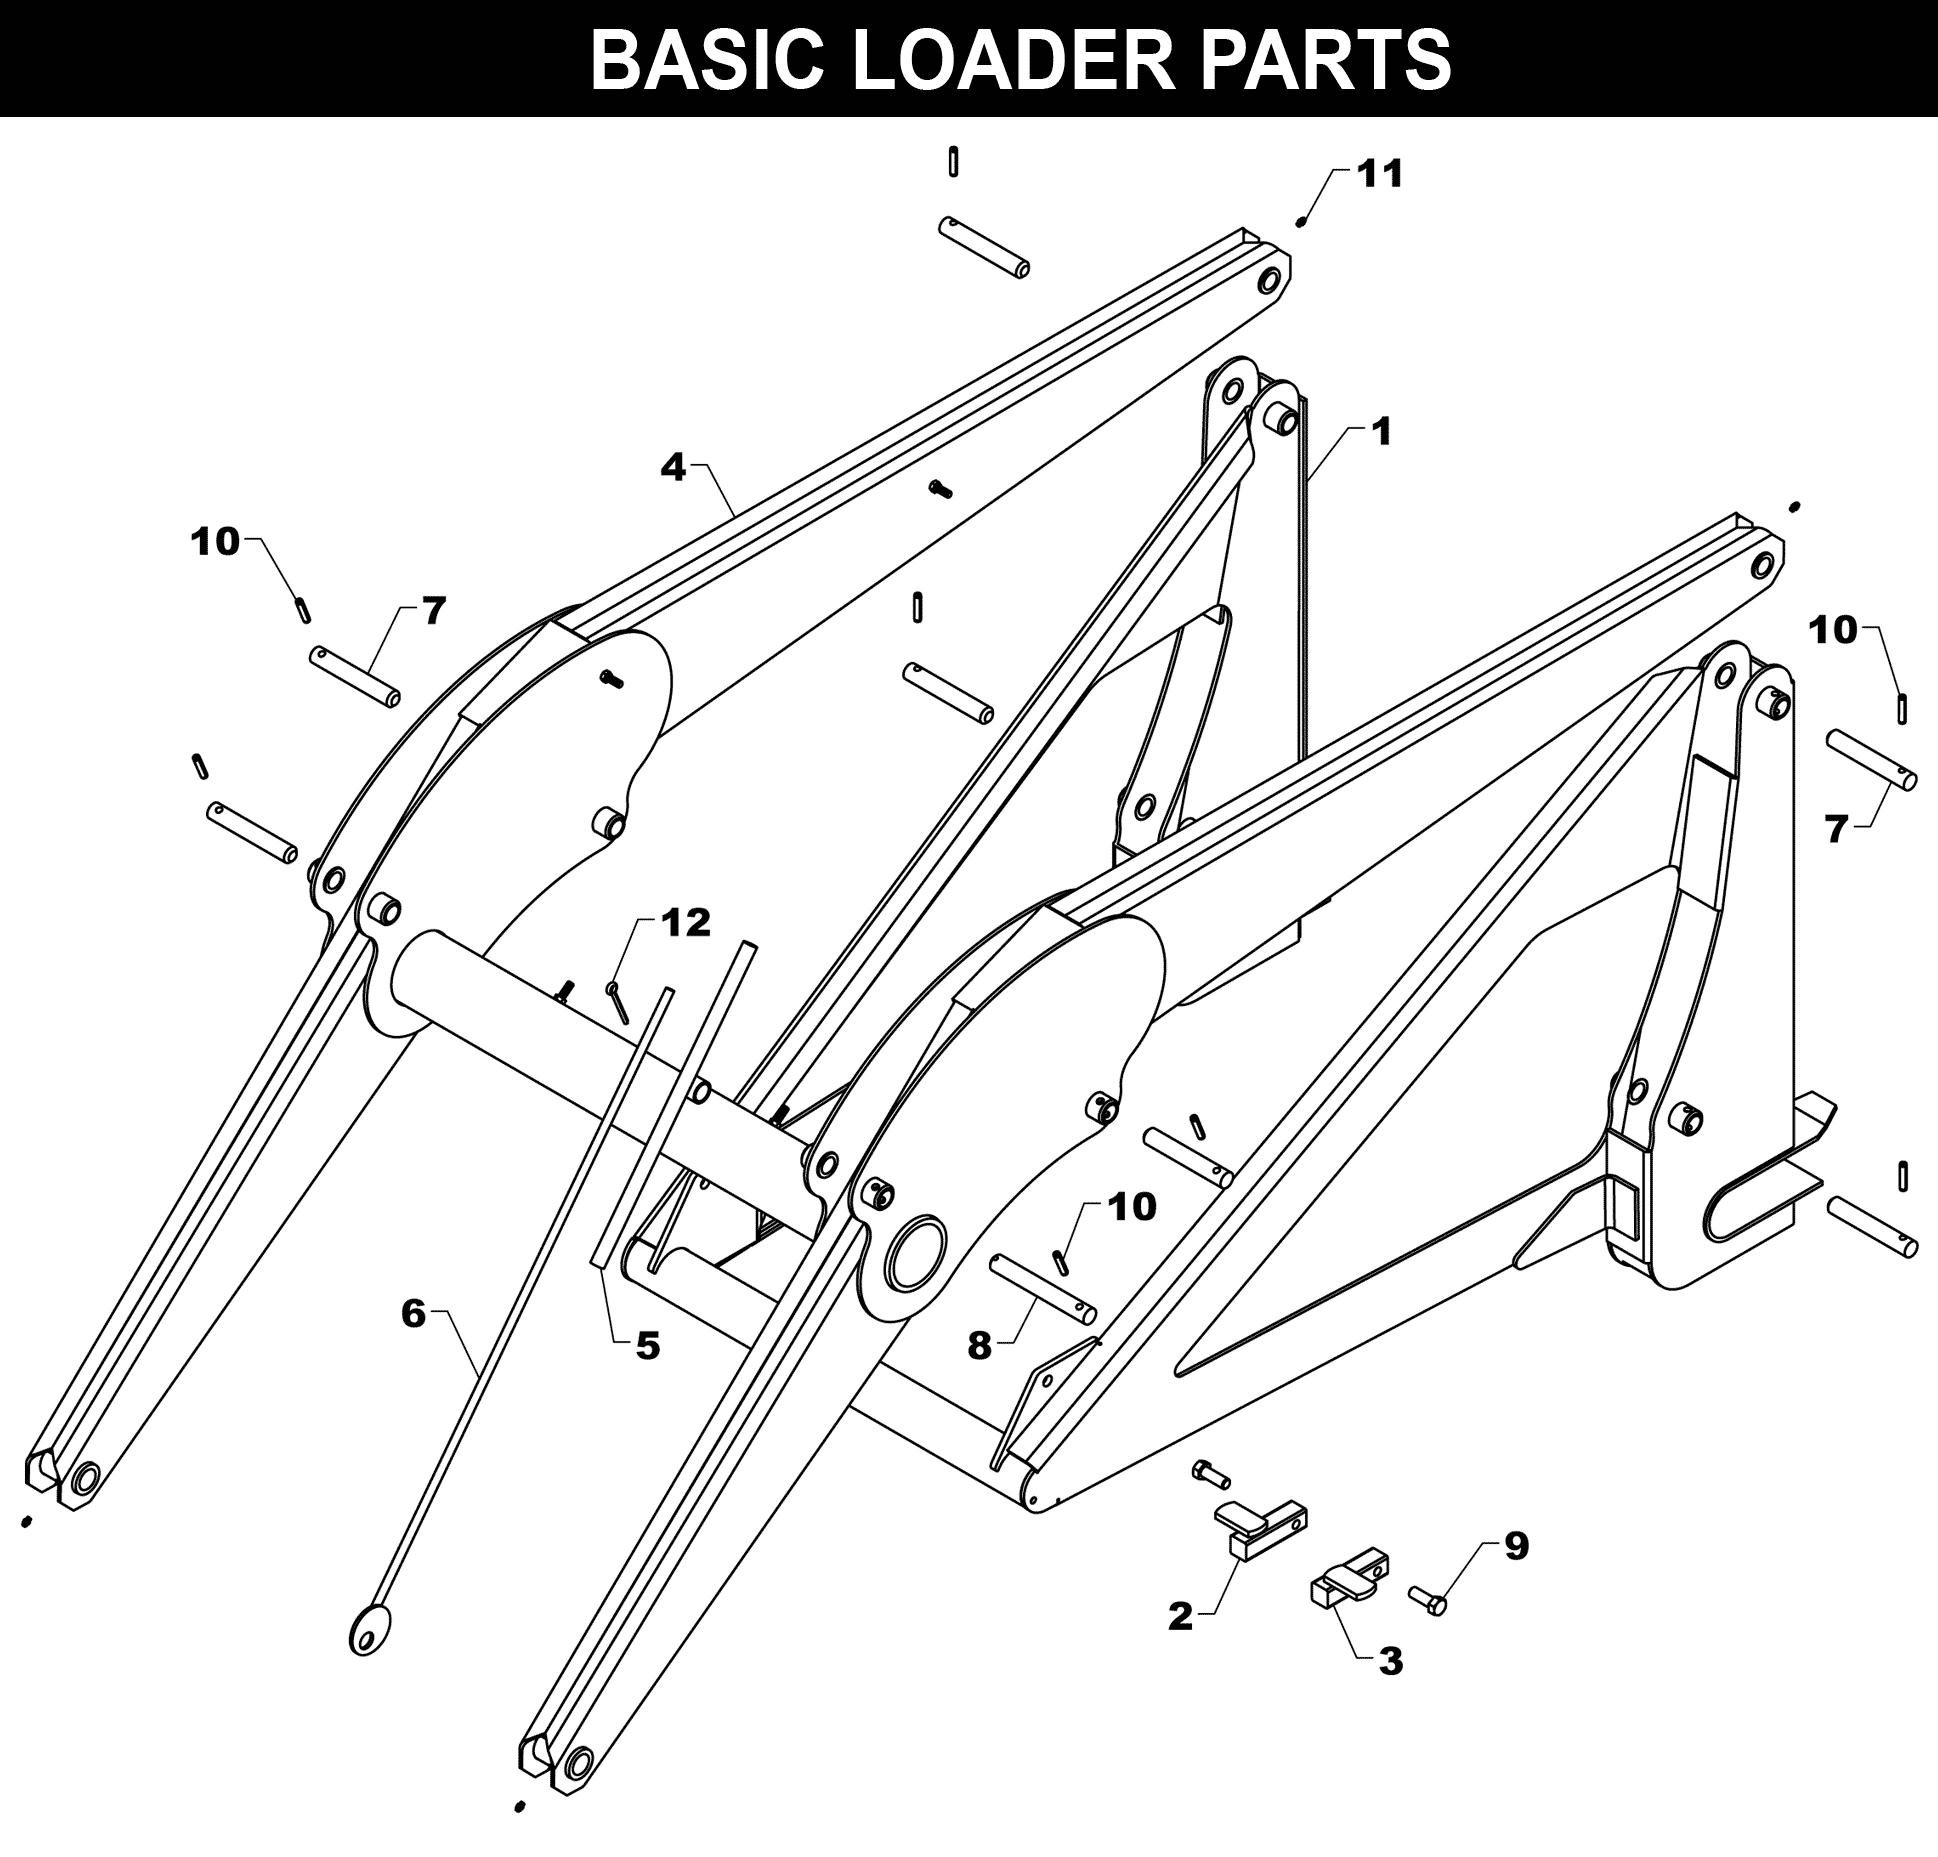 WL-27 Basic Loader Parts